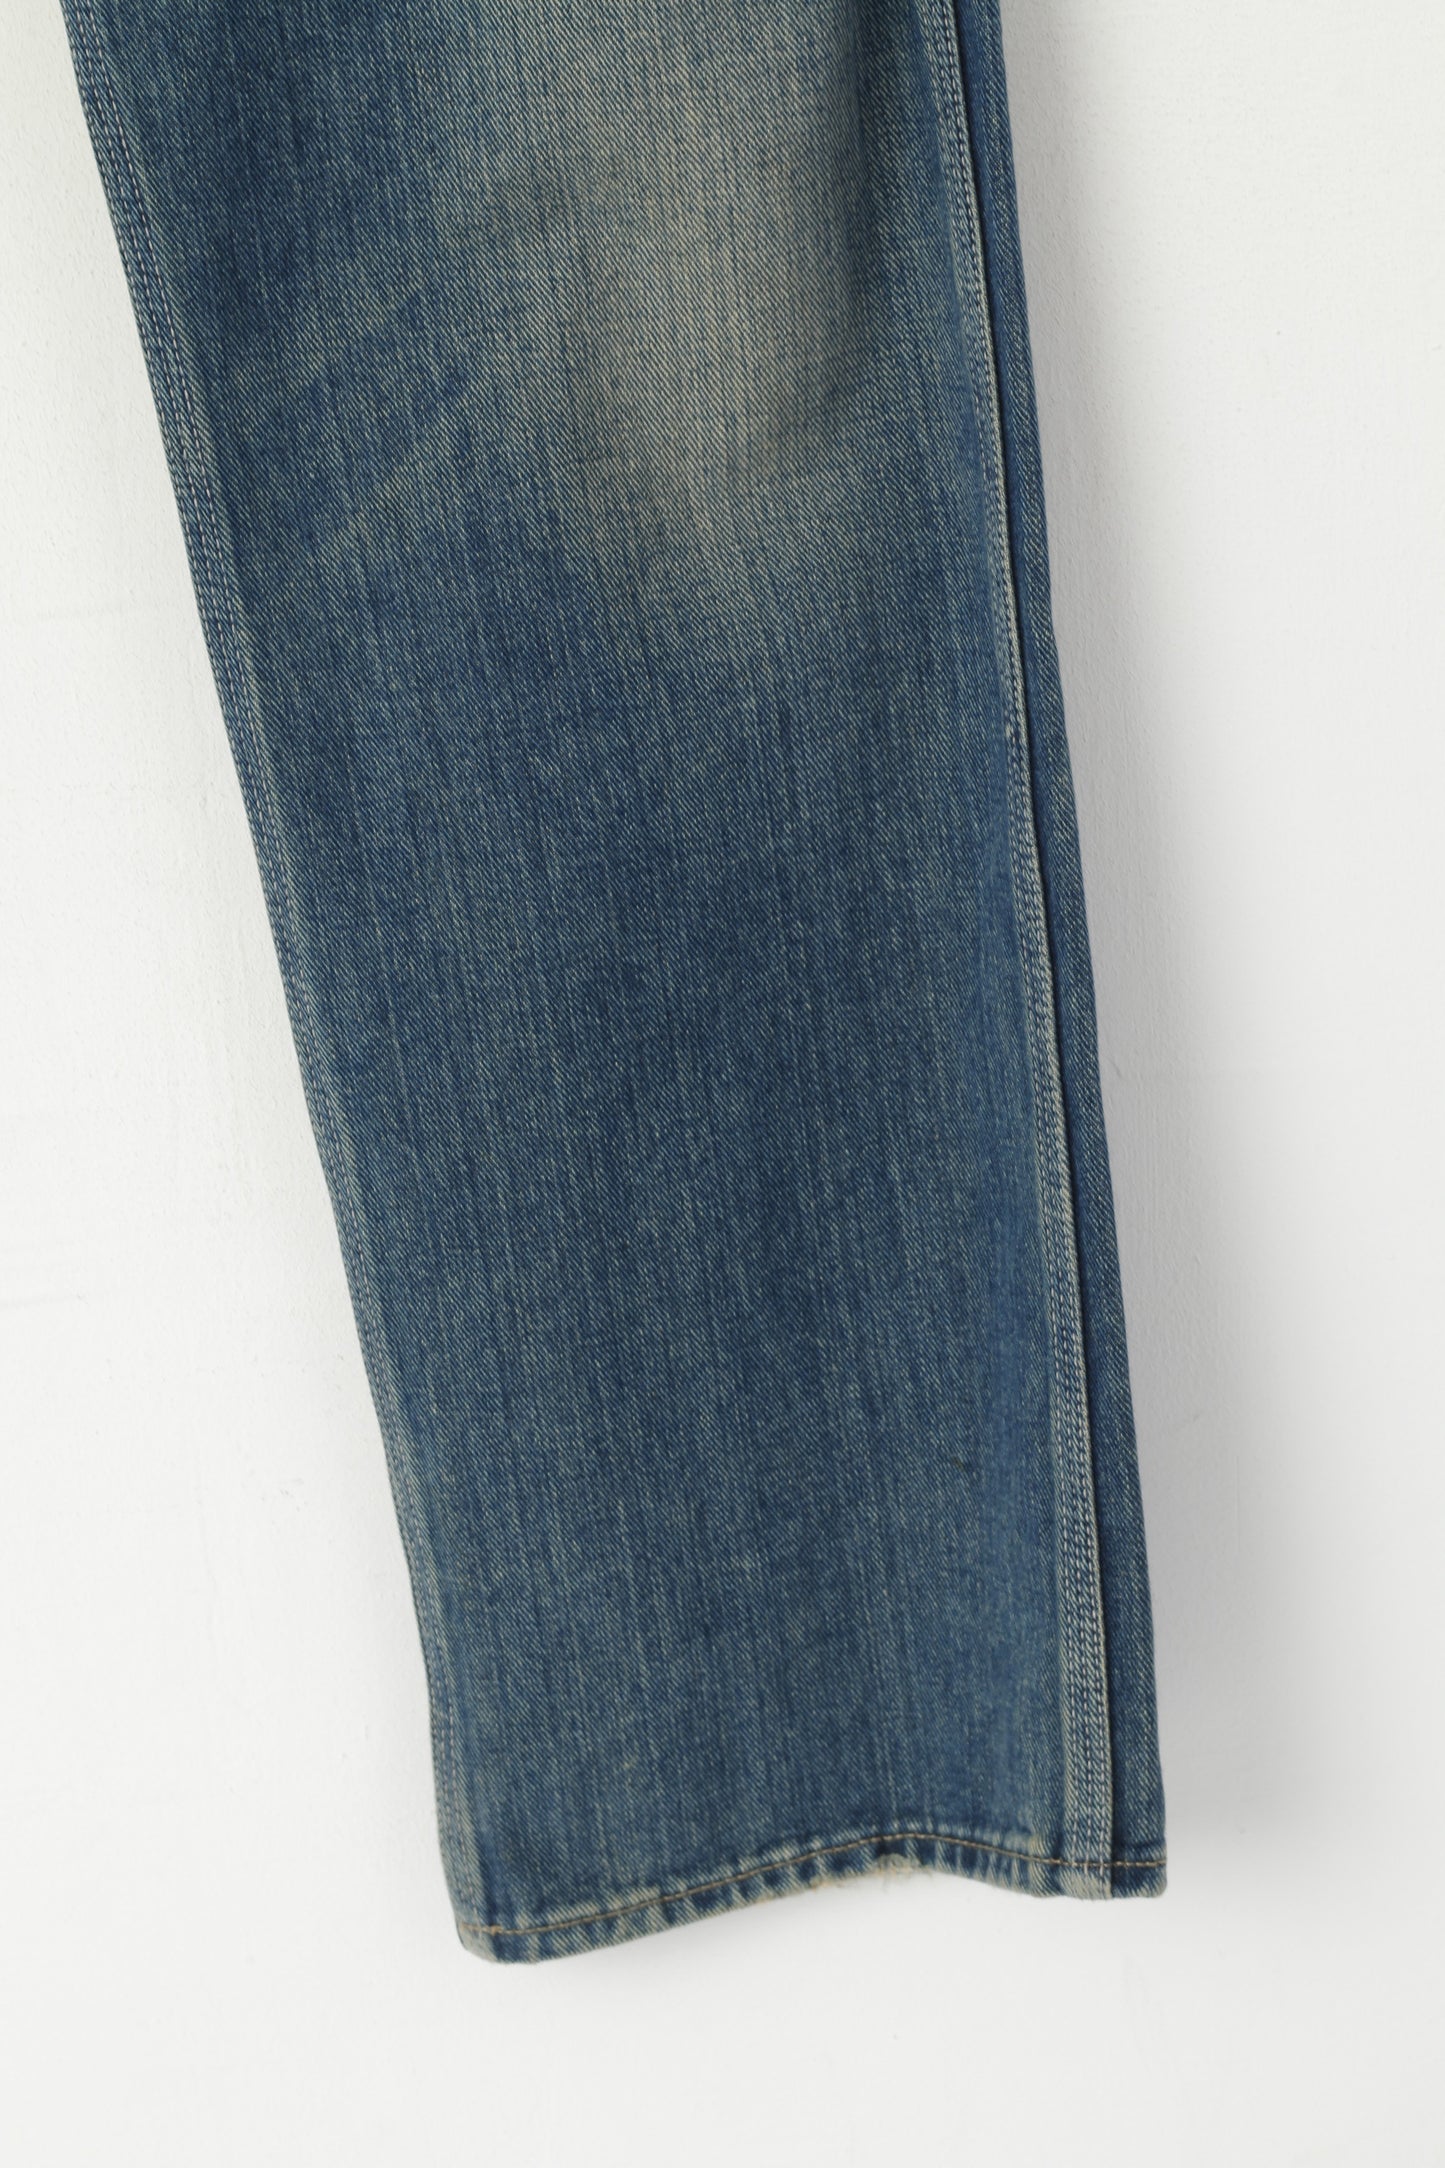 Paul Smith Jeans Men 34 Trousers Navy Denim Cotton Straight Leg Classic Pants